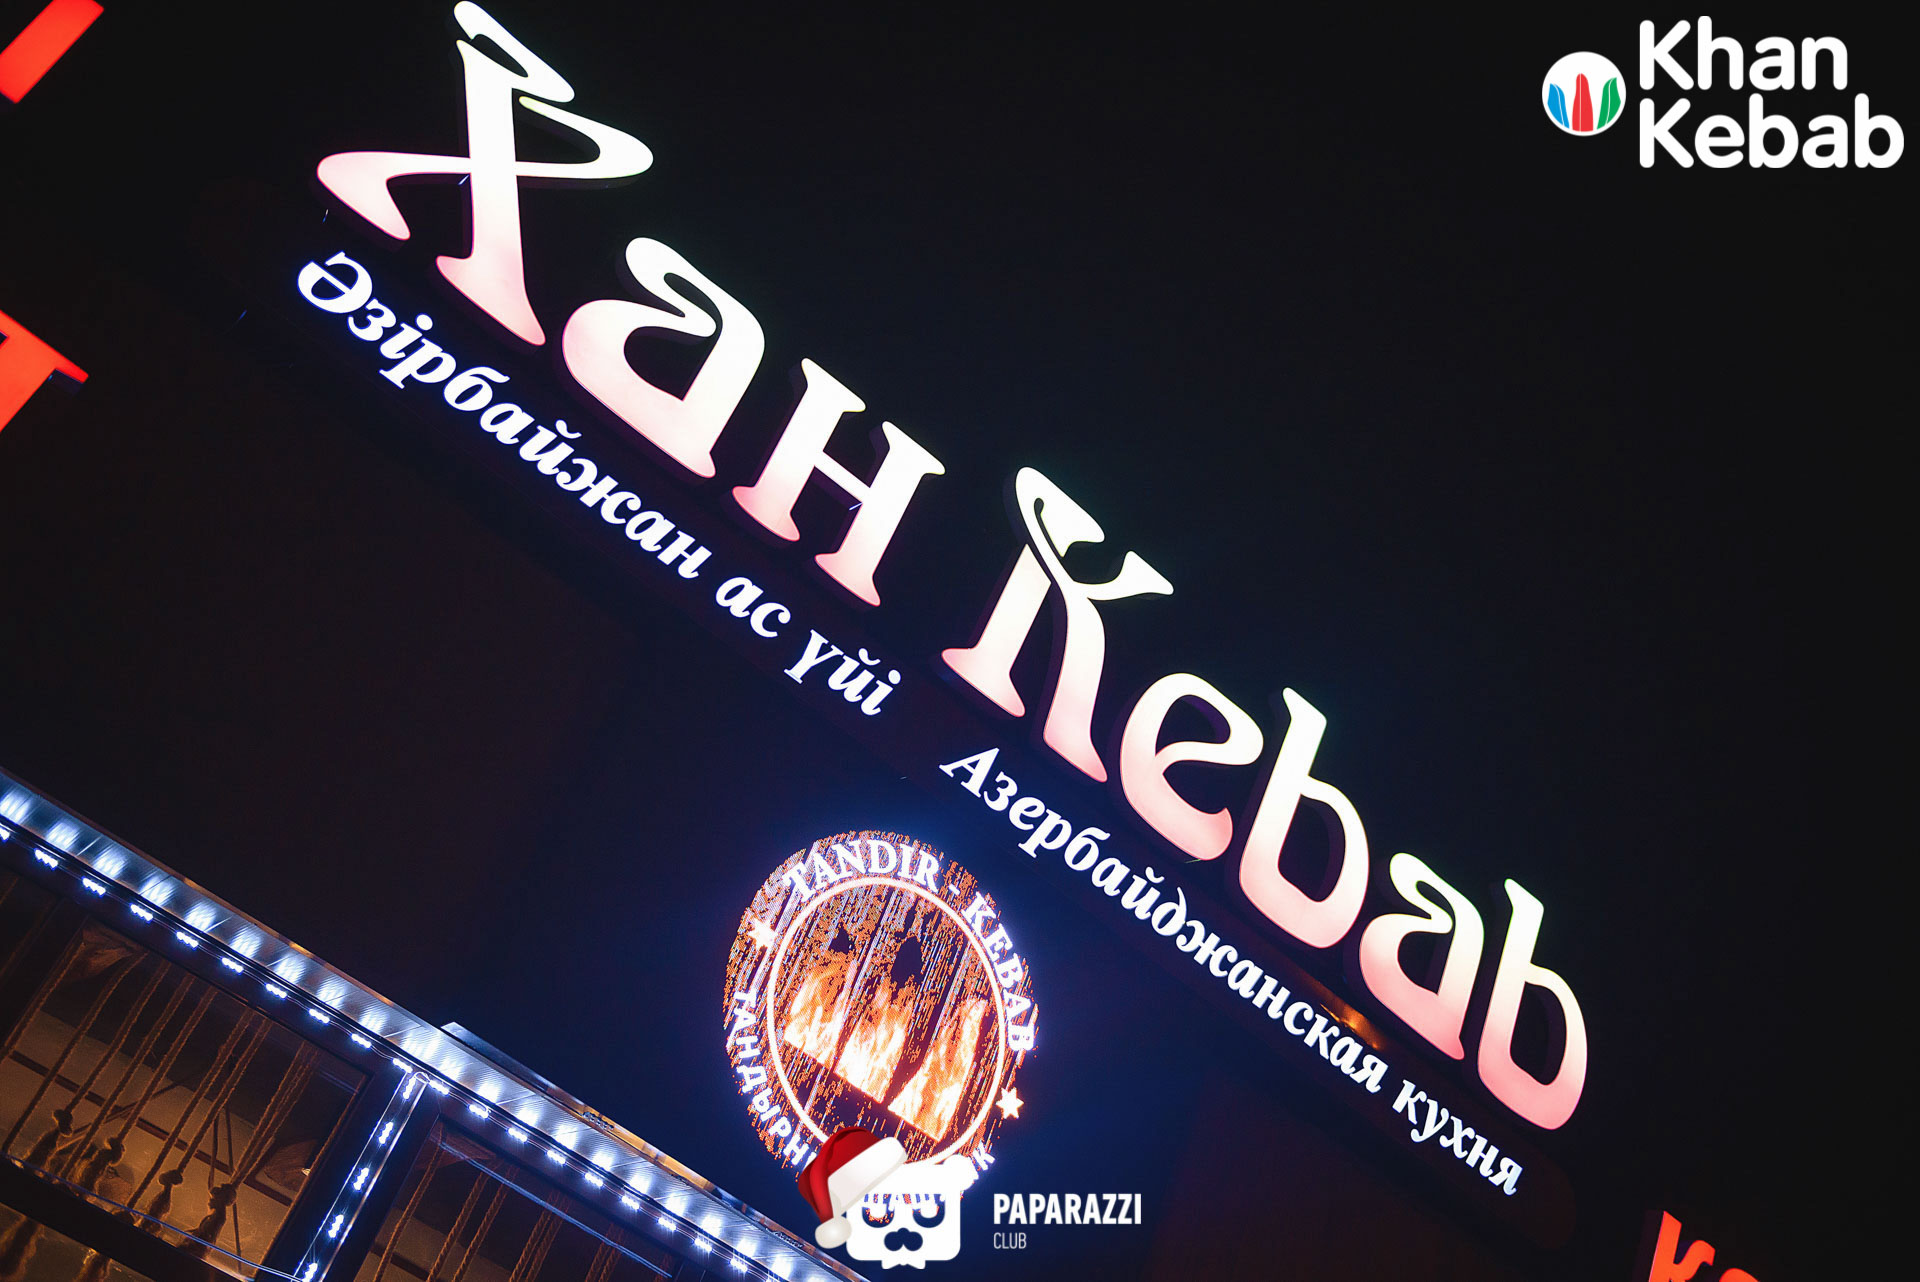 "Khan Kebab"